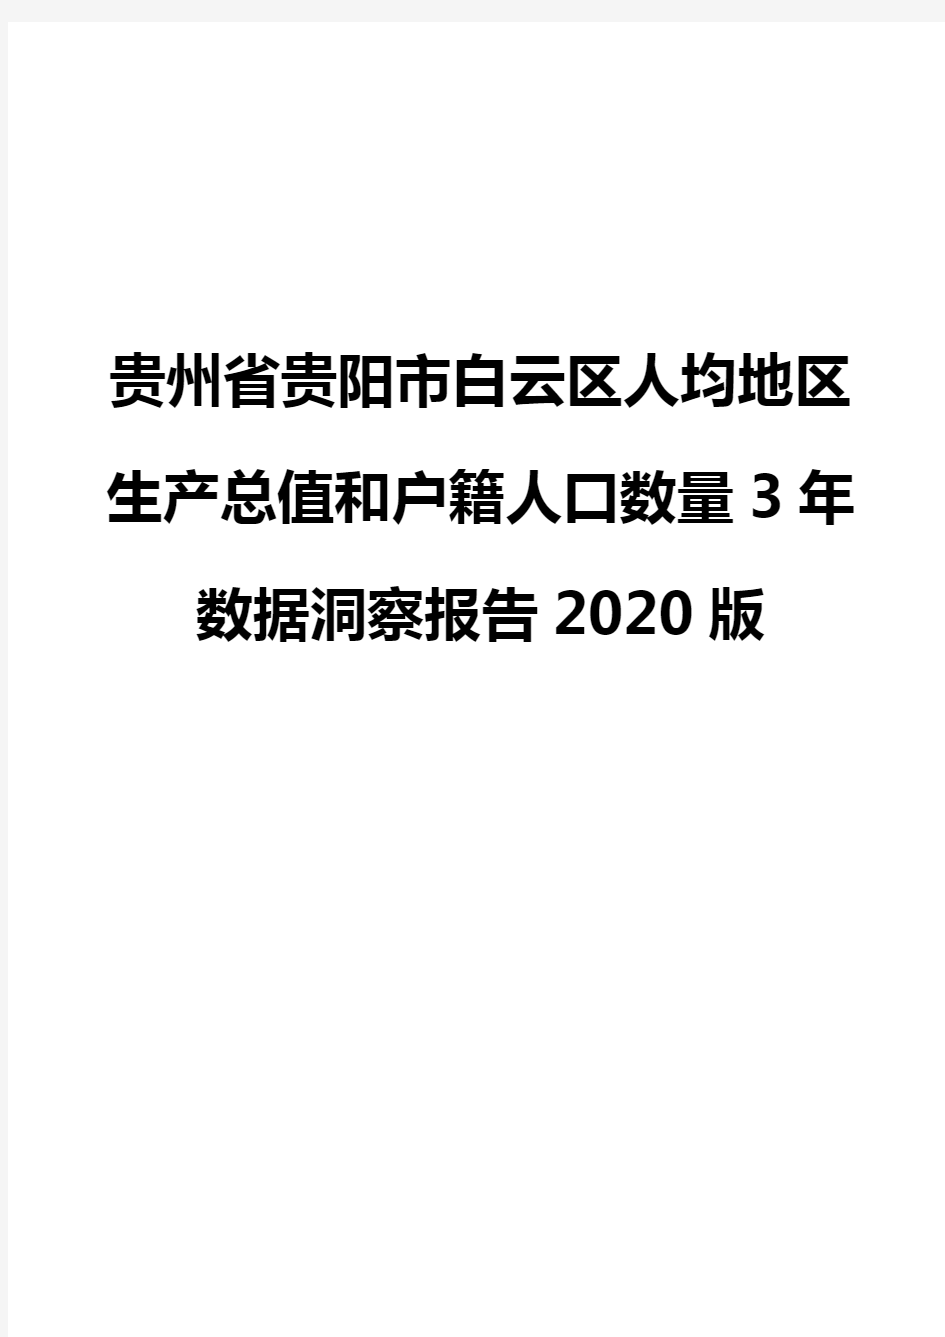 贵州省贵阳市白云区人均地区生产总值和户籍人口数量3年数据洞察报告2020版